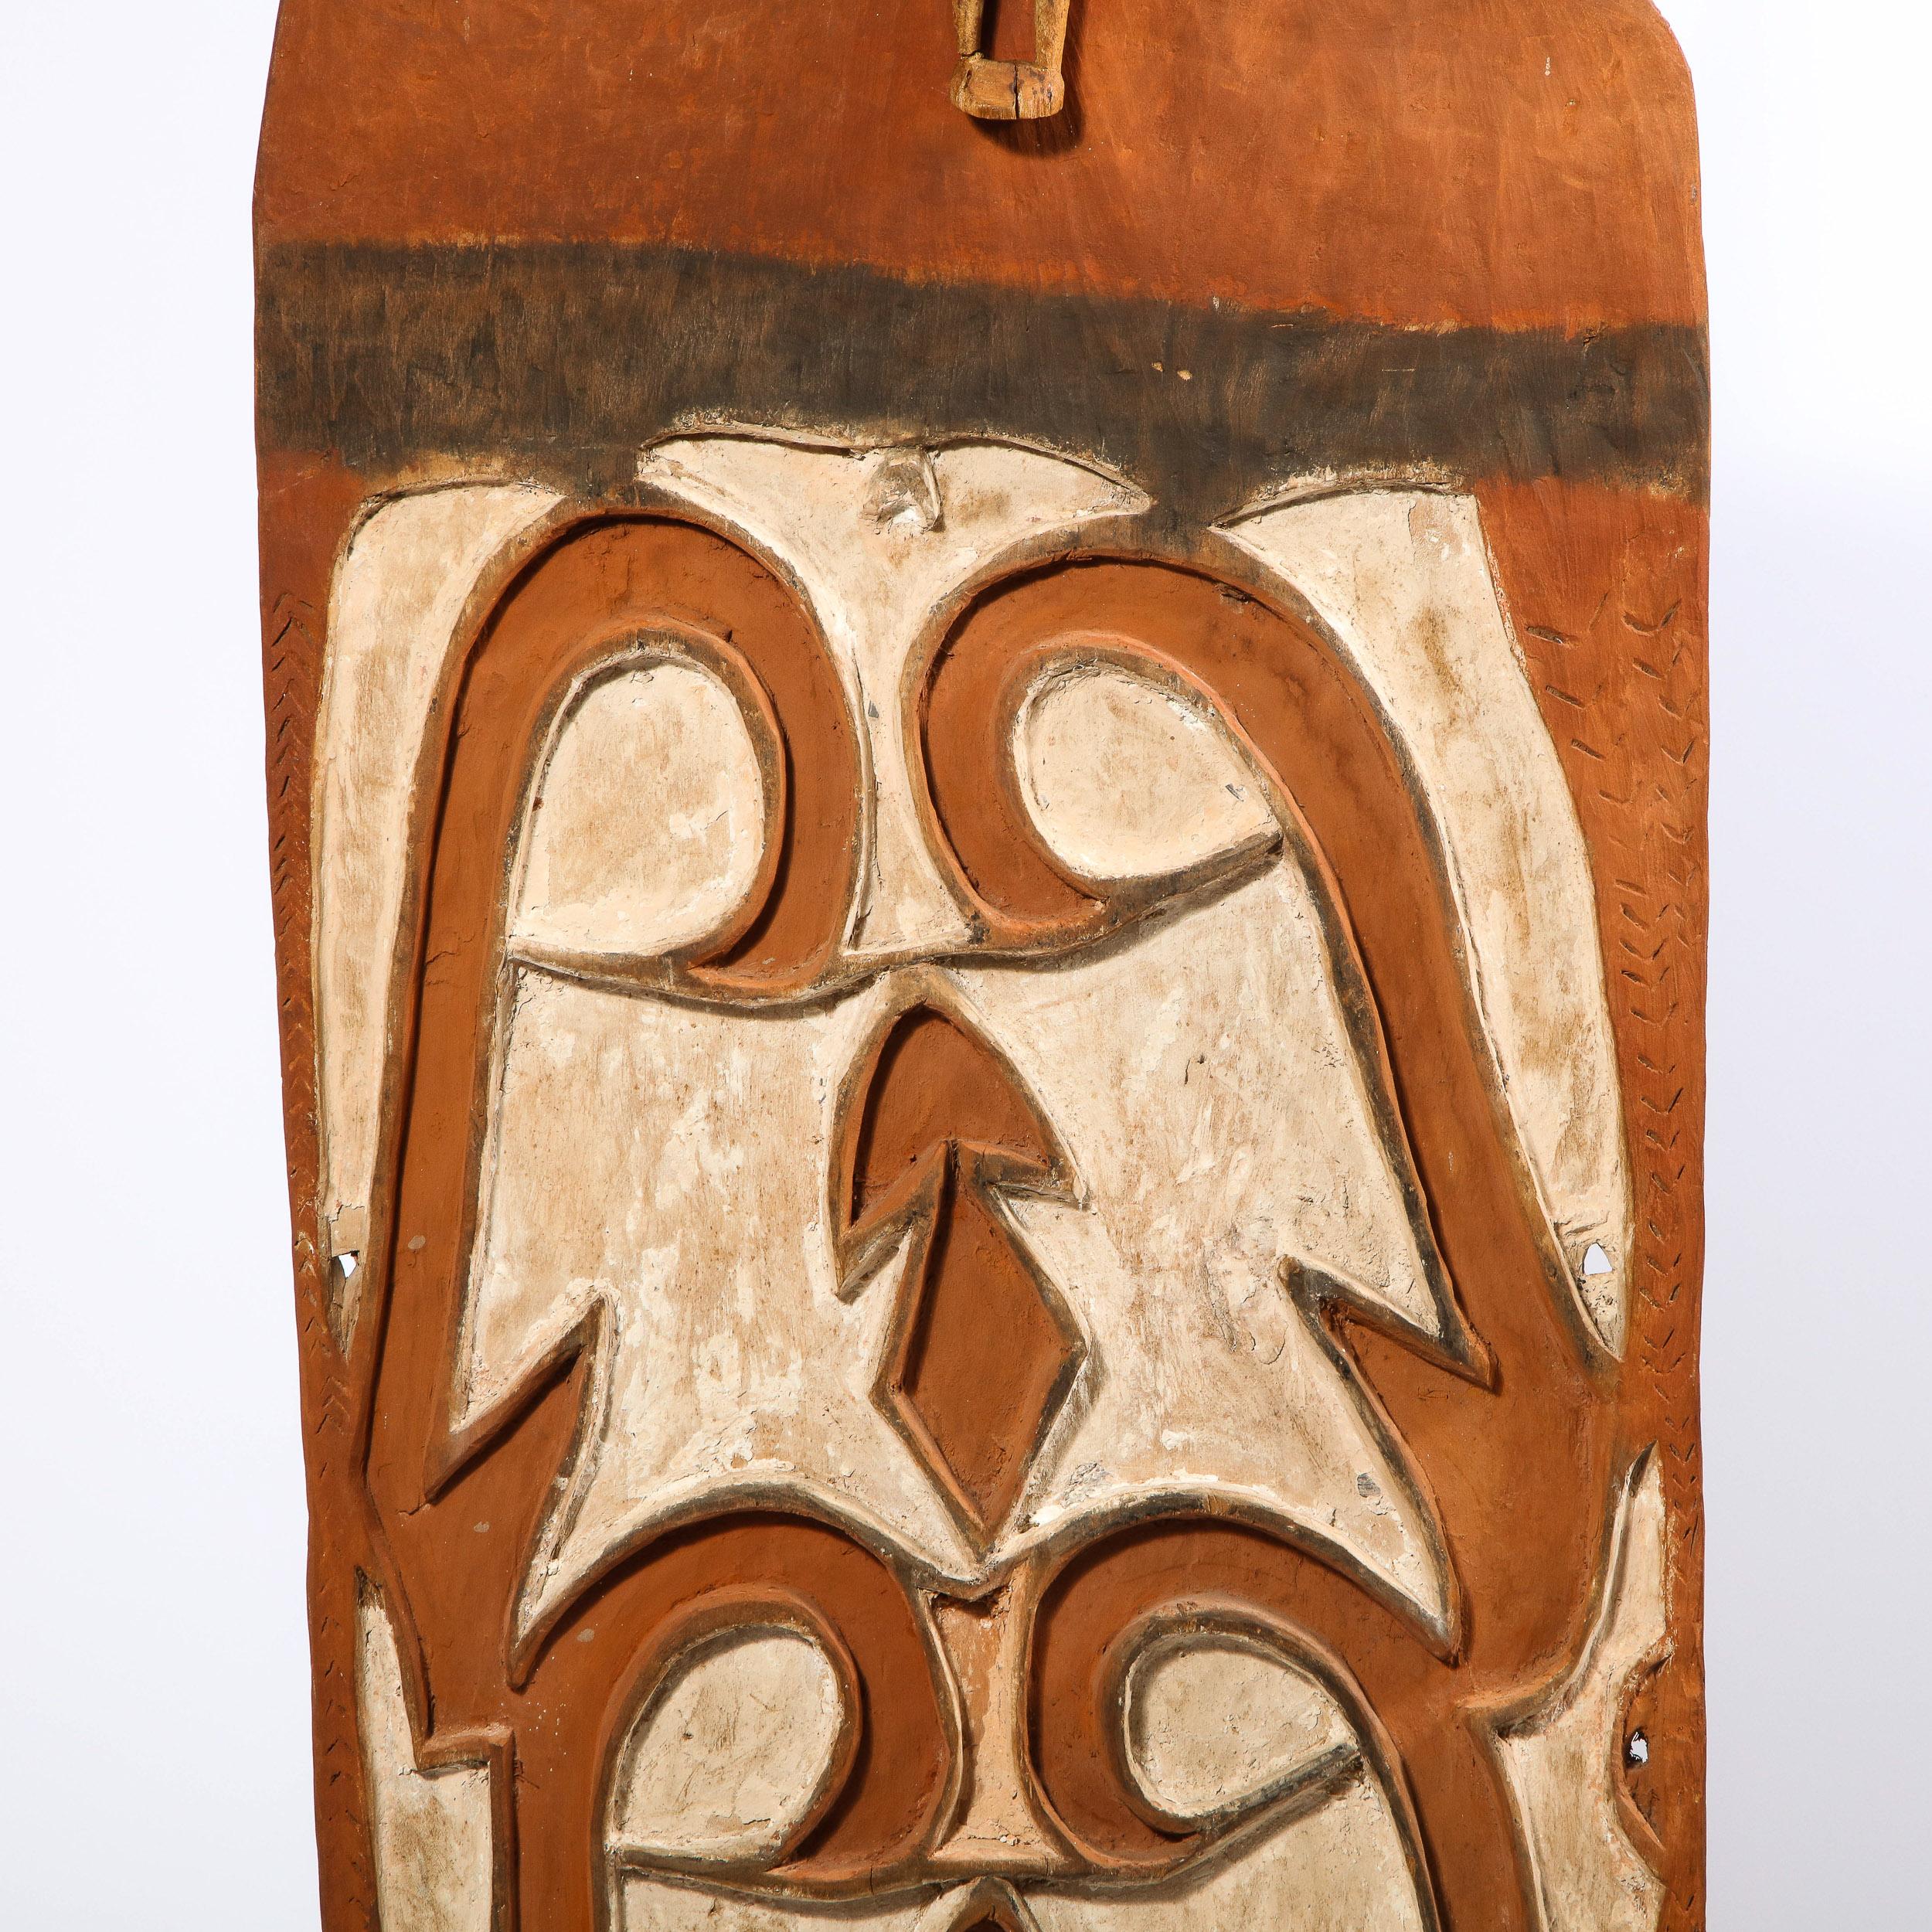 Dieses markante Schild wurde um 1960 in Papua-Neuguinea hergestellt. Die rechteckige Form aus unbehandeltem, nubukfarbenem Hartholz ist mit weißen, geschwungenen und geometrischen Mustern beschriftet. Eine kleine geschnitzte Holzfigur ziert den